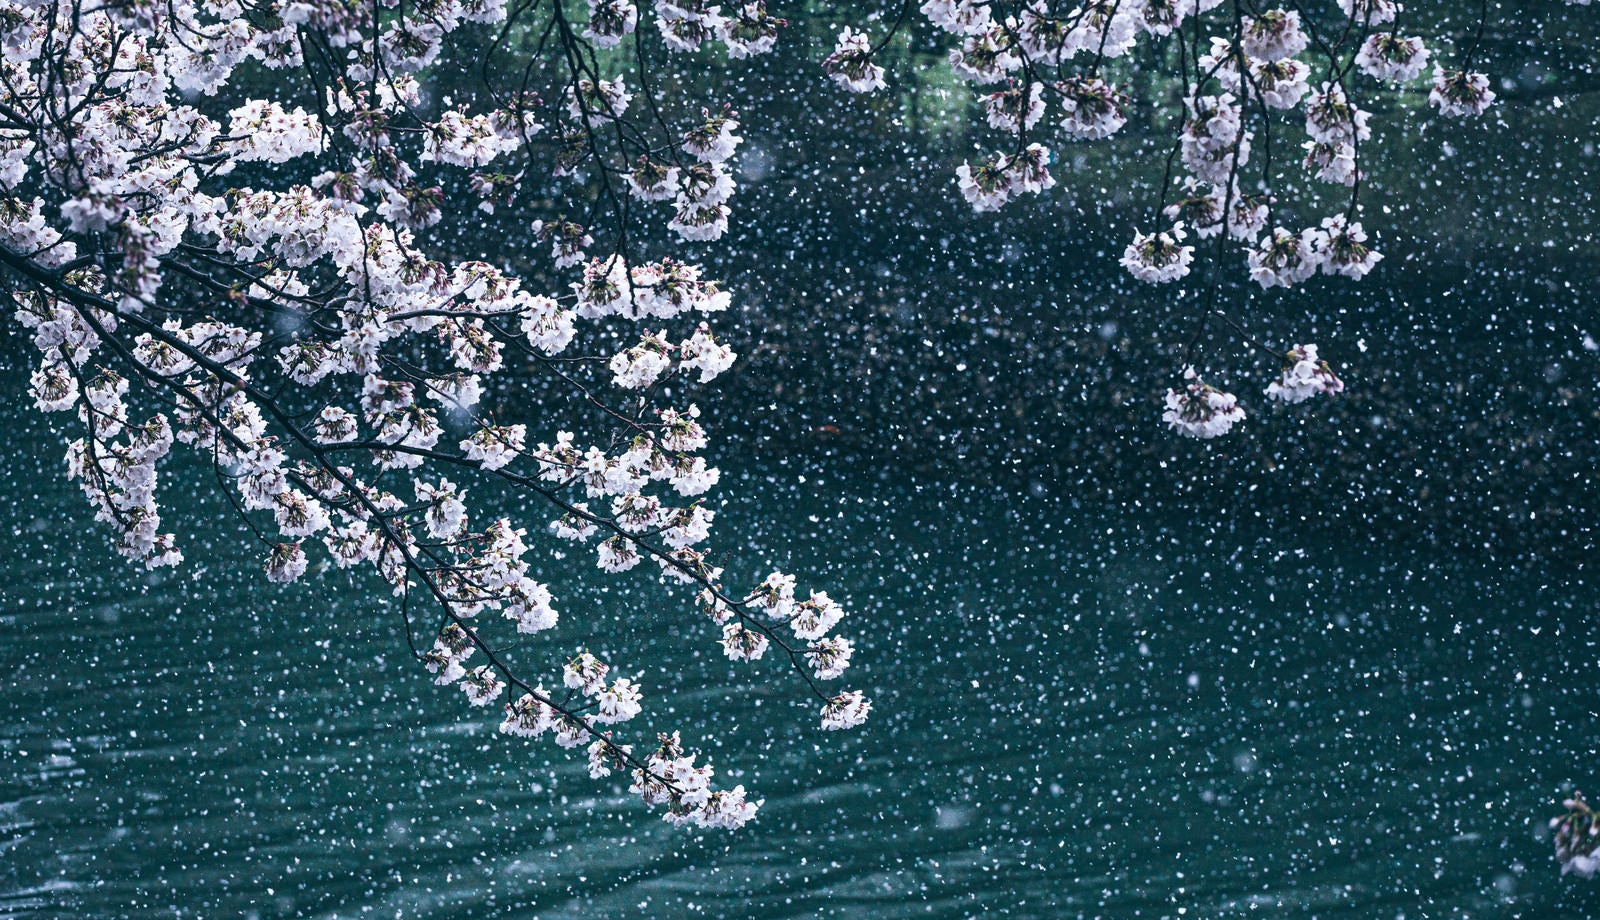 「満開に咲く桜と降雪が桜吹雪のよう」の写真